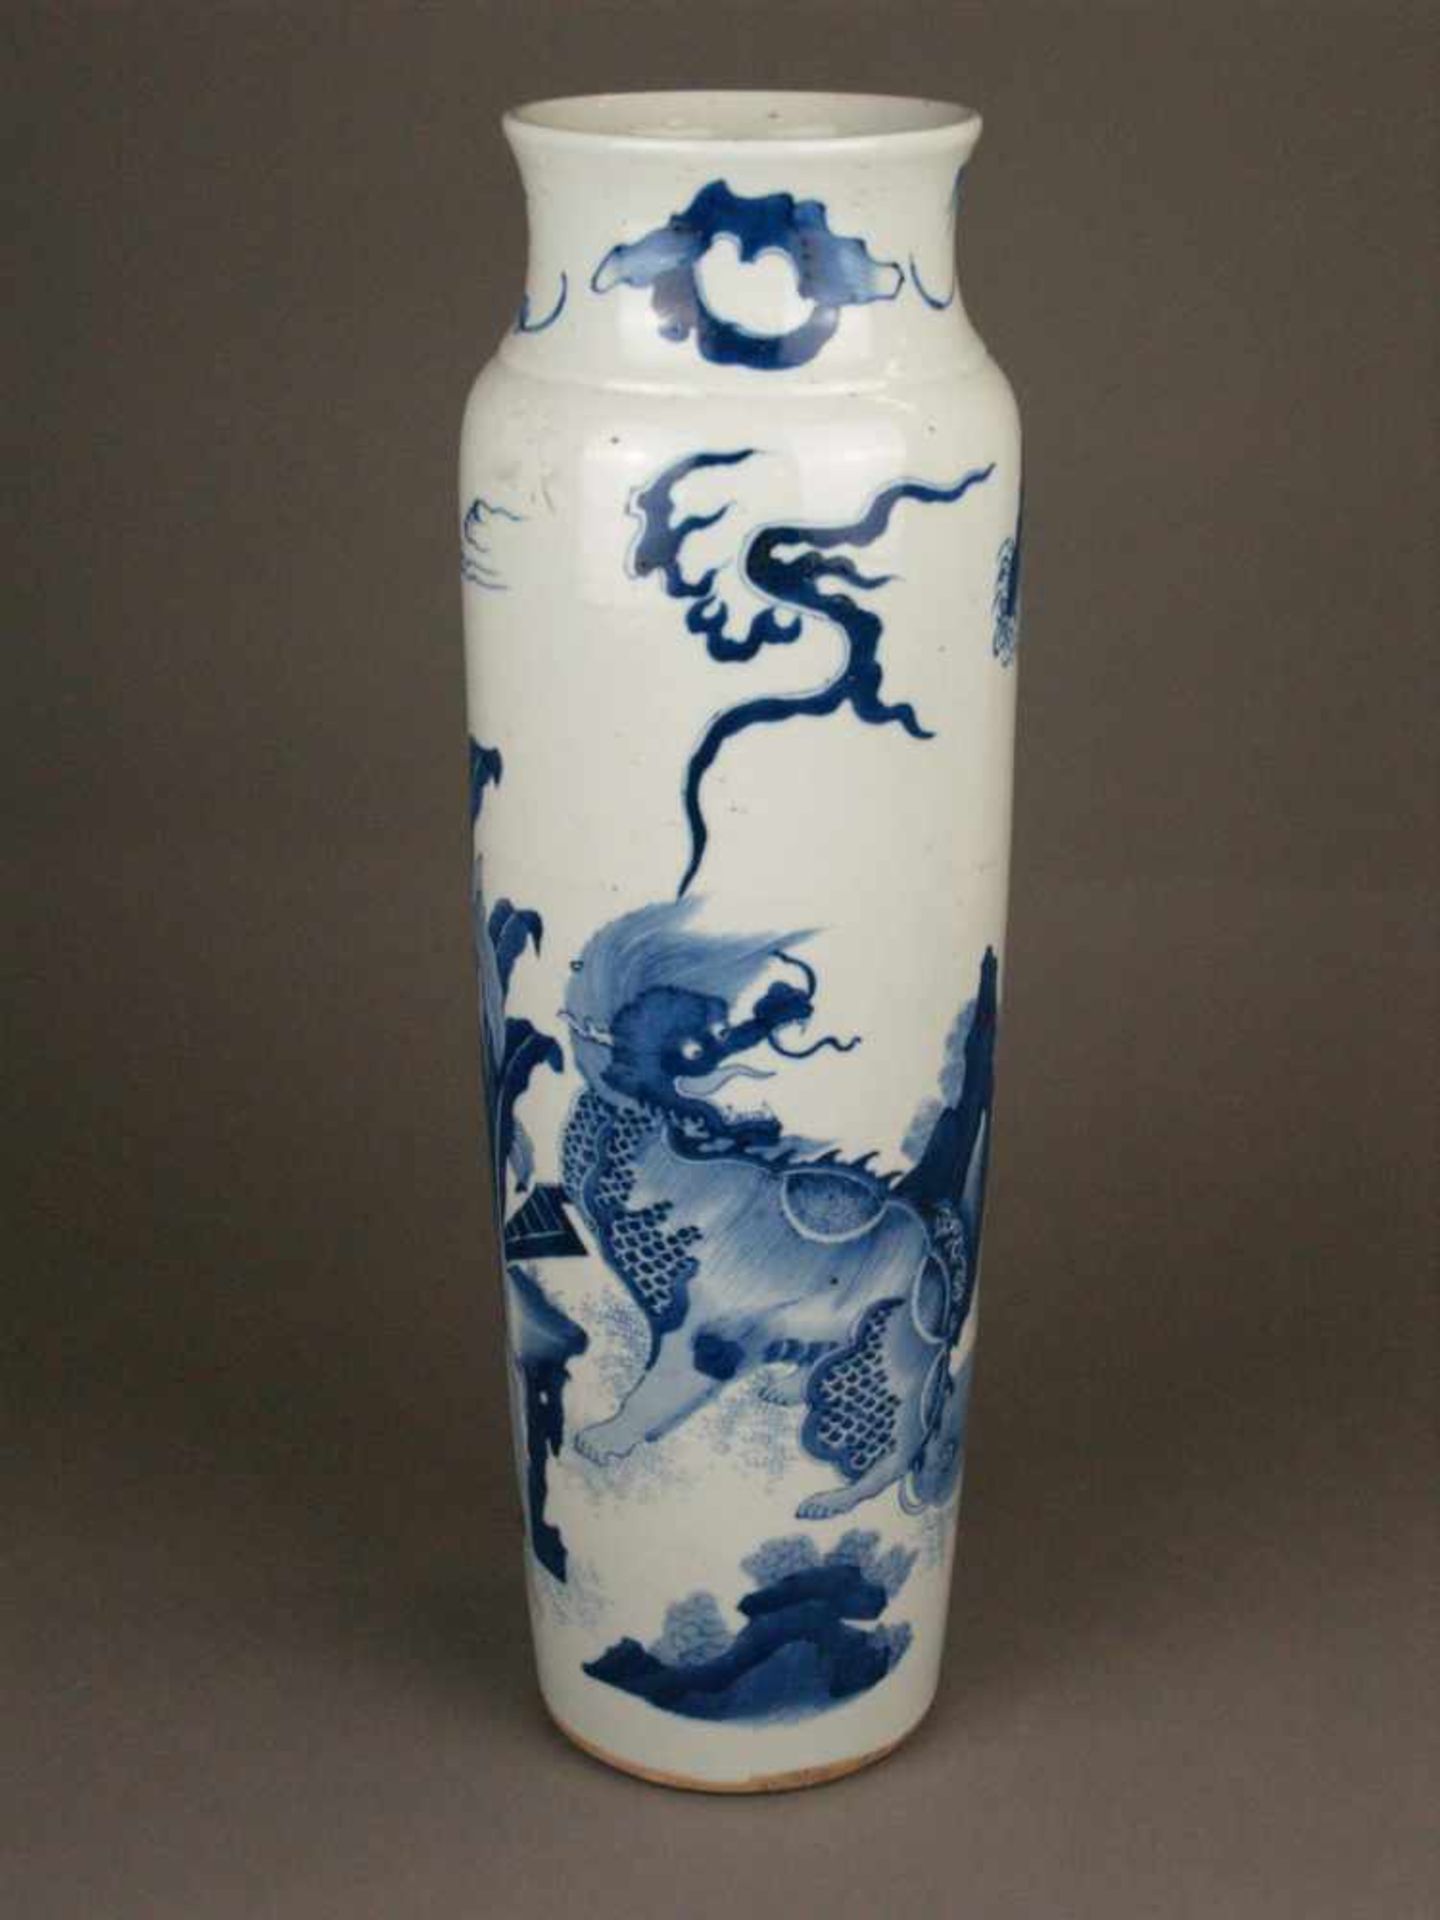 Blau-Weiß-Vase - China, hohe leicht ausgestellte Zylinderform mit eingeschnürter Mündung und